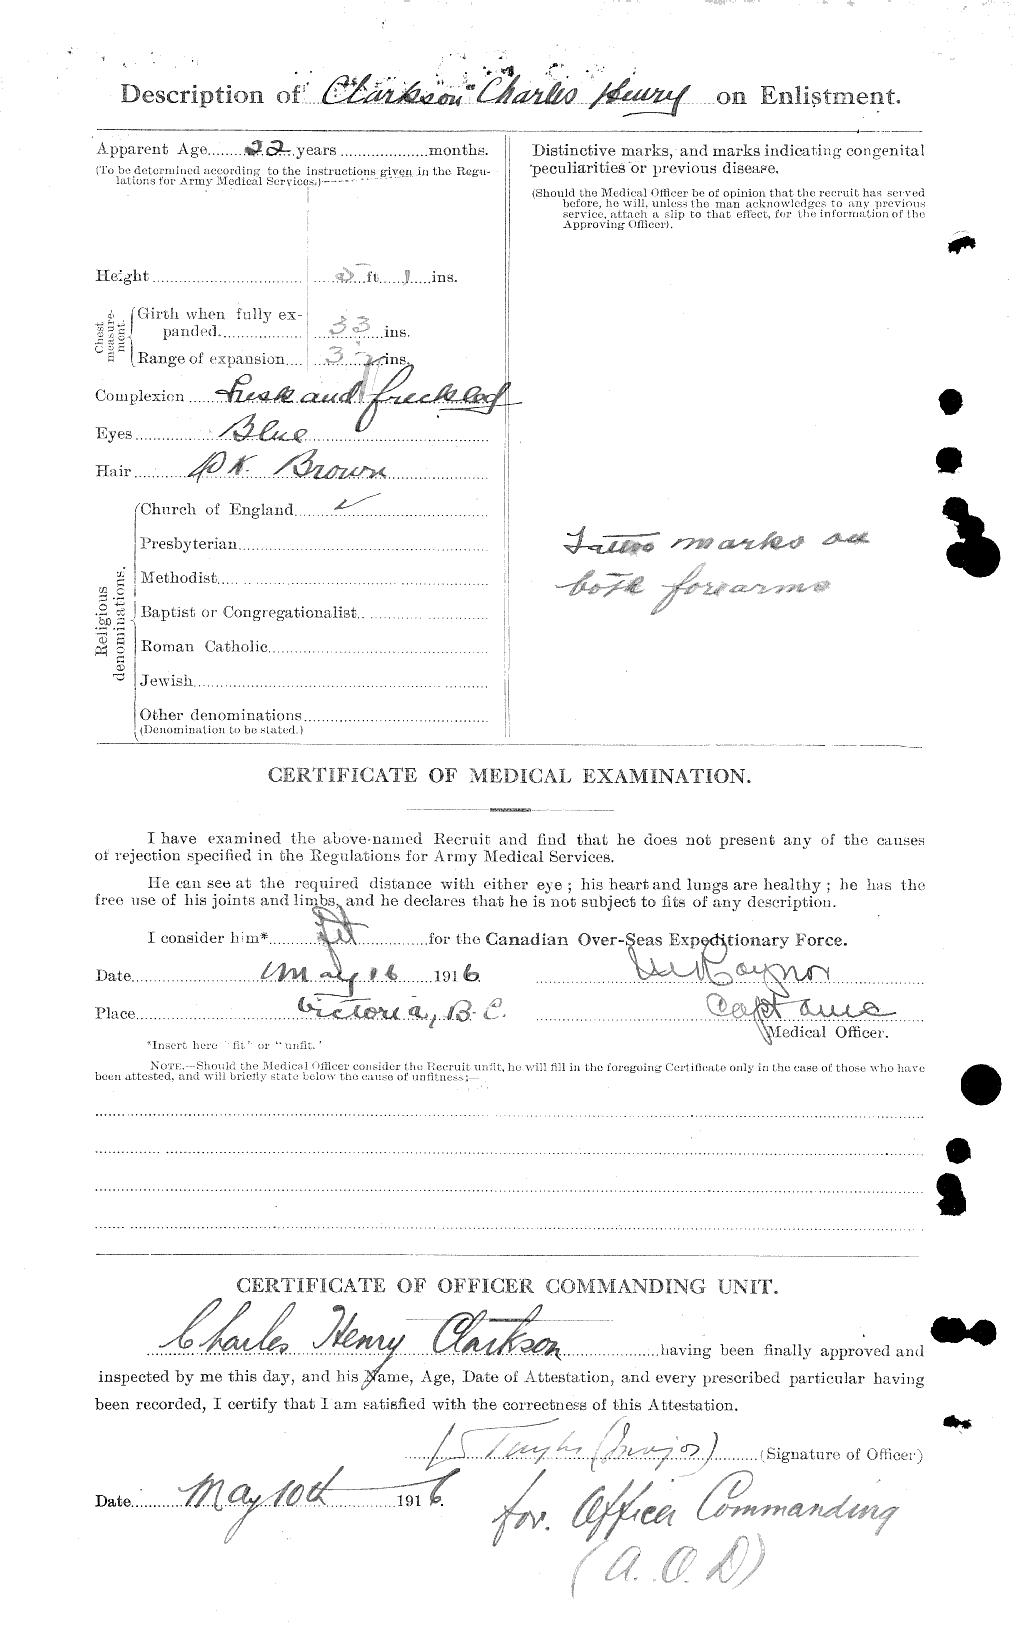 Dossiers du Personnel de la Première Guerre mondiale - CEC 023625b